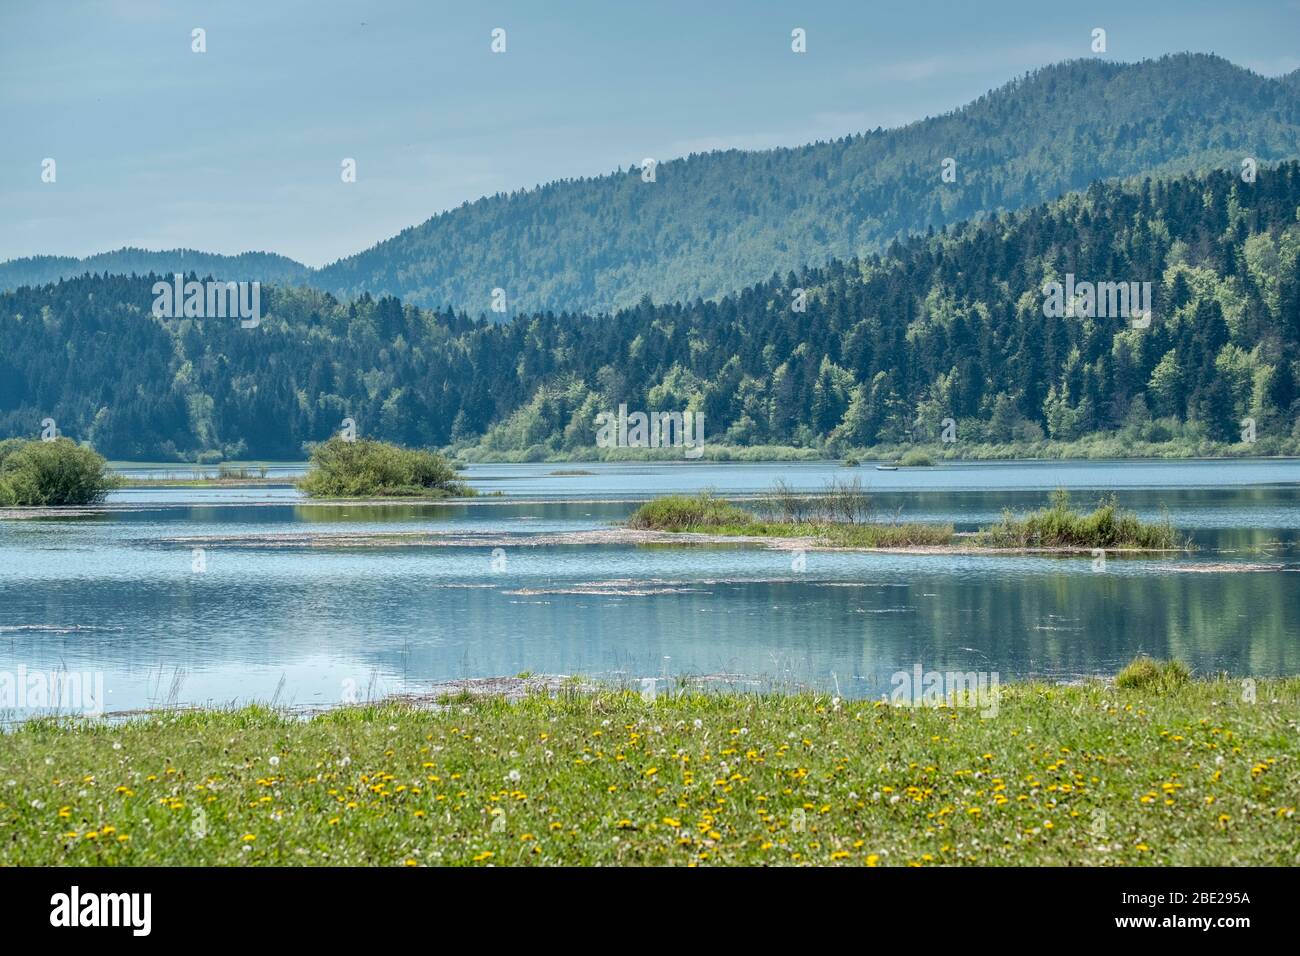 Cerknica lake in spring, Slovenia Stock Photo